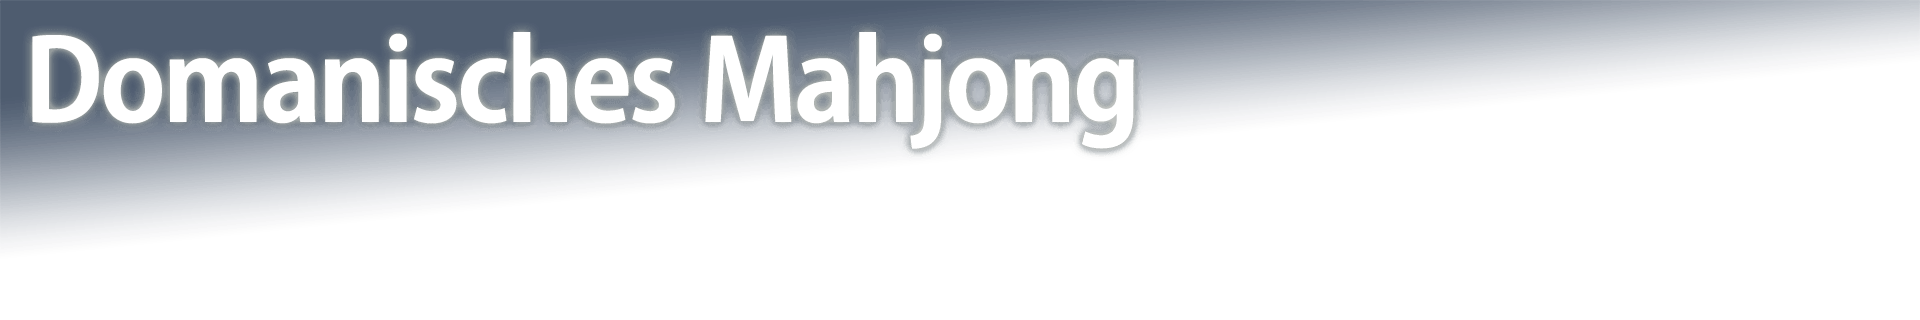 Domanisches Mahjong